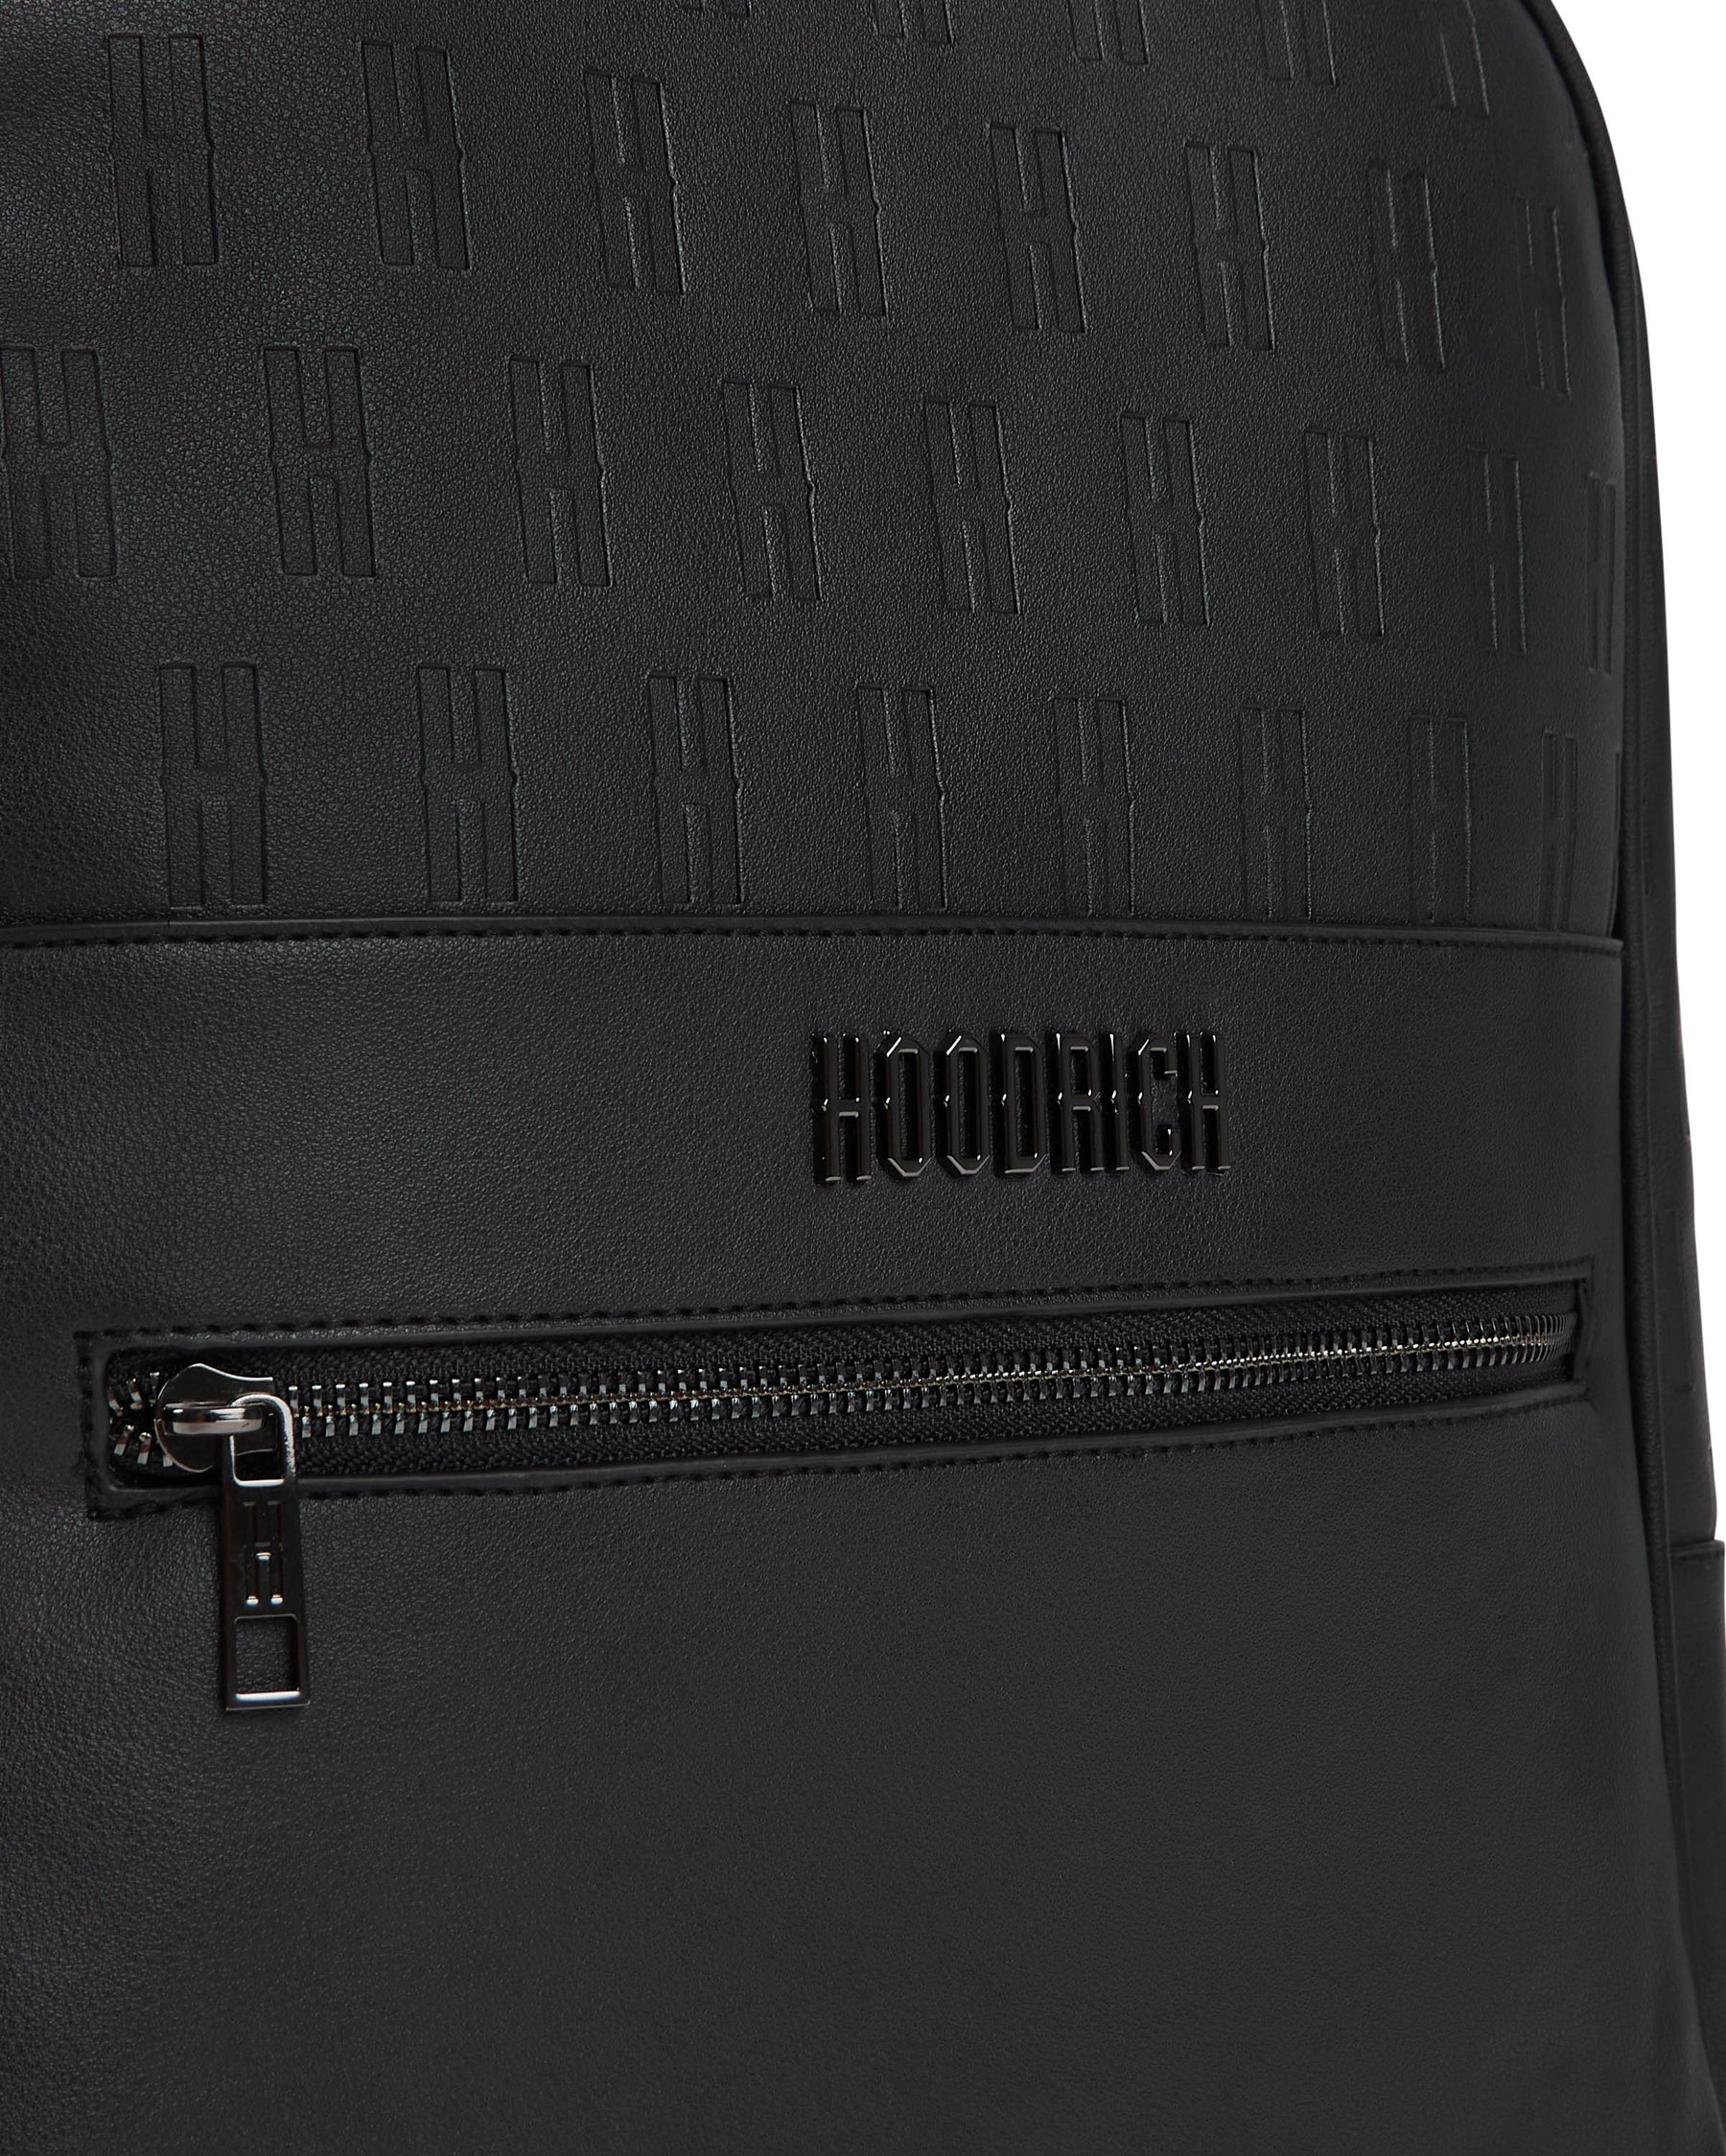 OG Exclusive Backpack - Black/Silver